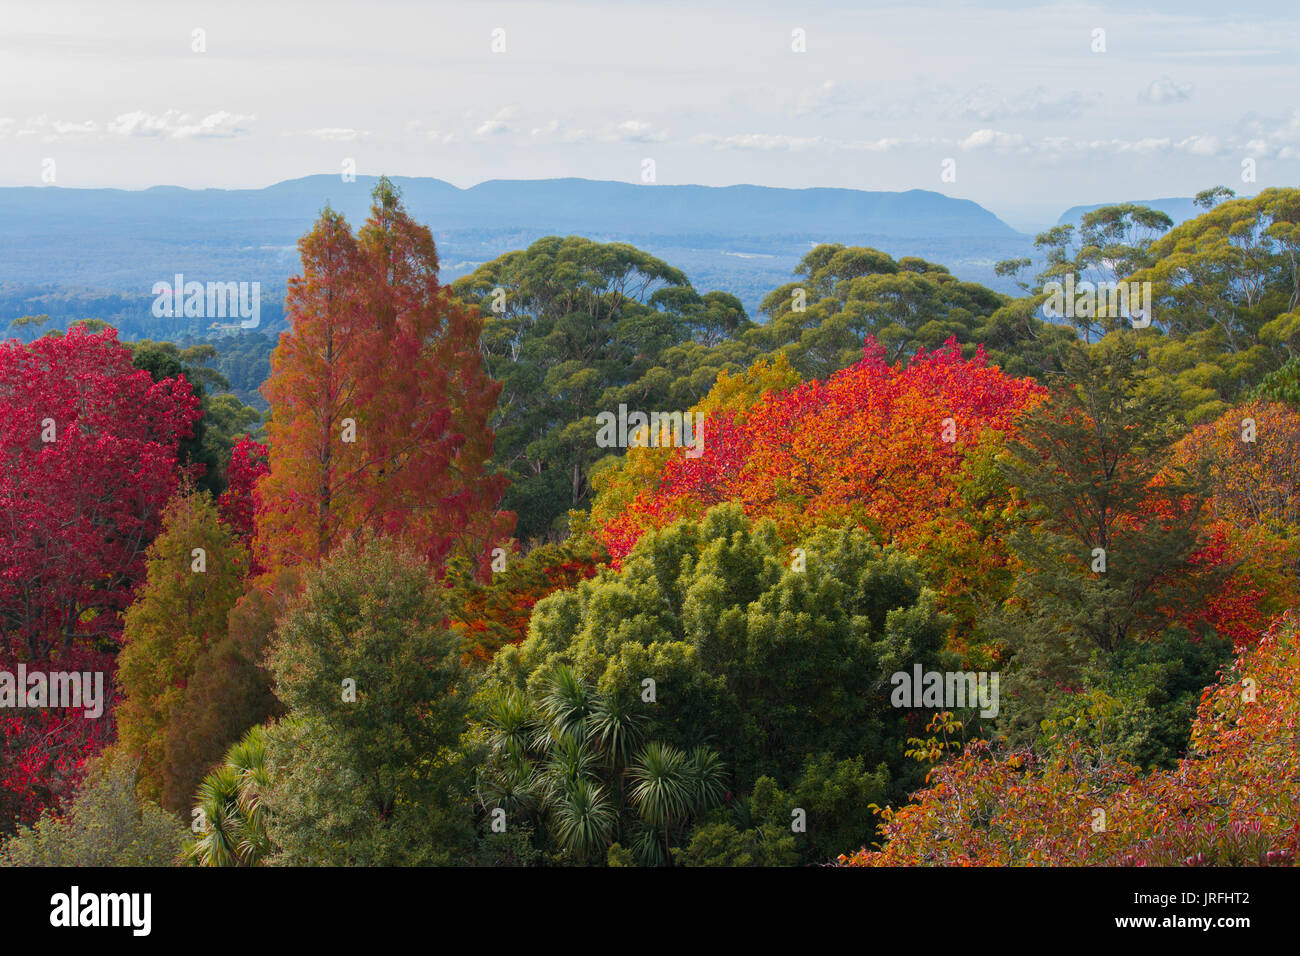 Autumn fall leaves on trees at Mt Tomah botanic gardens, Blue Mountains Australia Stock Photo